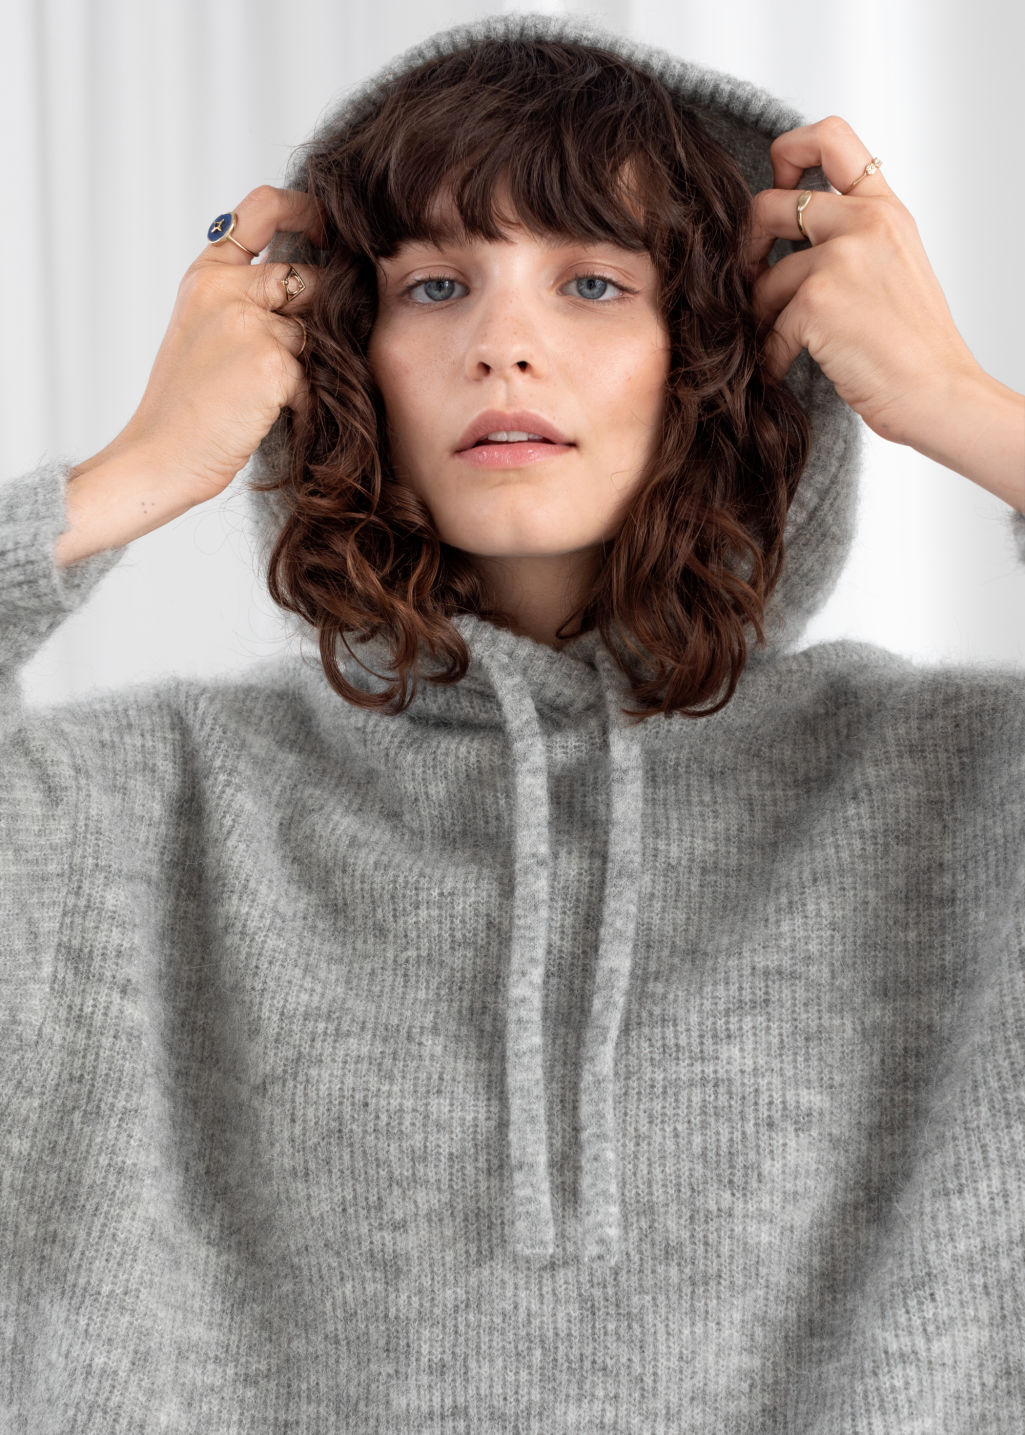 Le Fashion: Stylish Under-$100 Hooded Sweatshirt Is a Dream